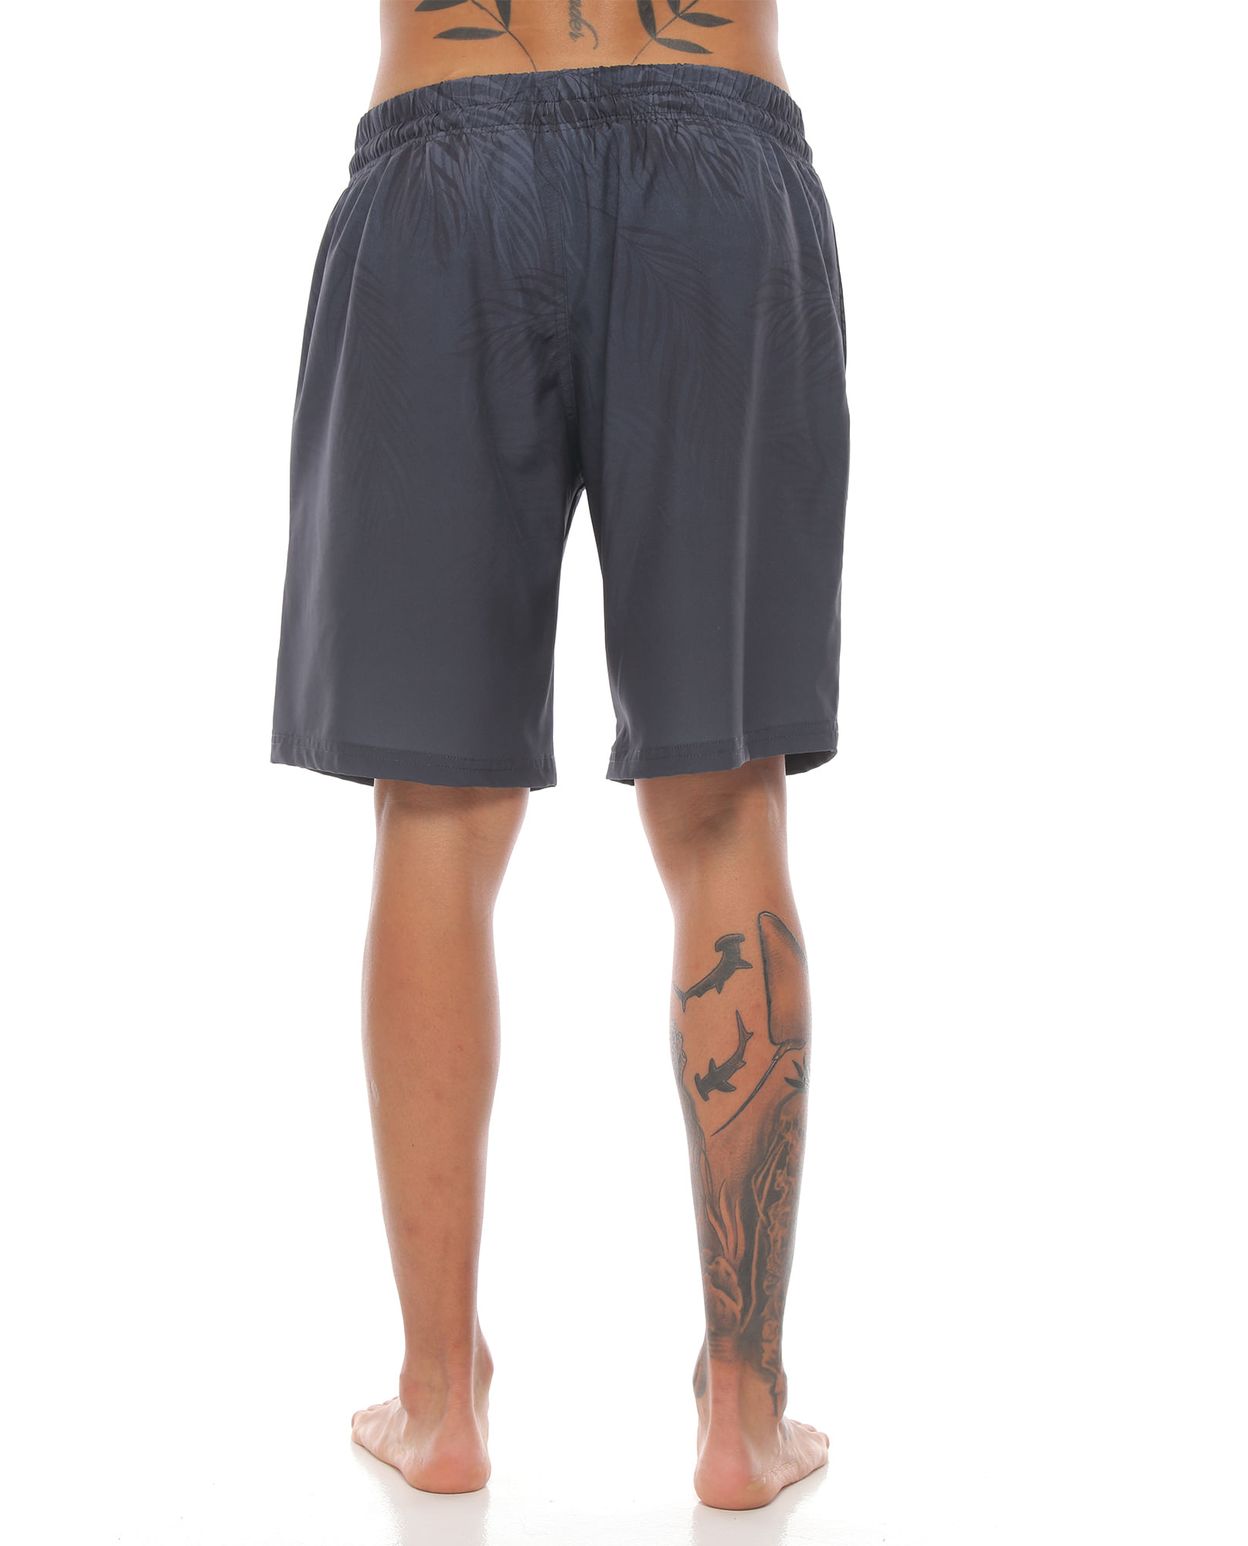 pantaloneta de playa larga color gris oscuro para hombre parte trasera